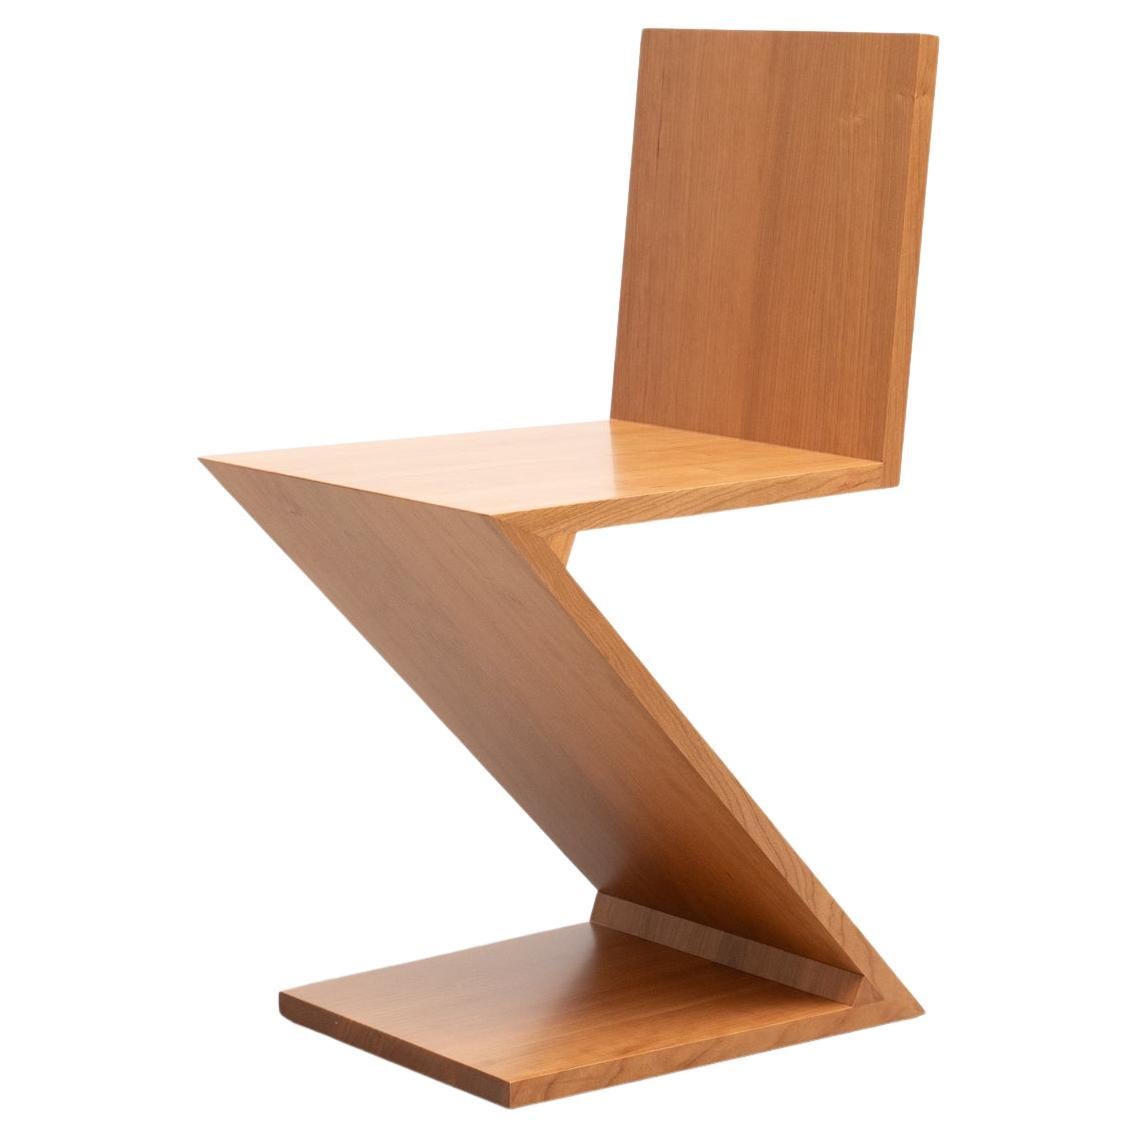 Chaise conçue par Gerrit Thomas Rietveld en 1934. 

Fabriqué par Cassina en Italie, relancé en 1973/2011.

Conçue par Gerrit Rietveld, cette chaise est un exemple précoce de siège en porte-à-faux. Elle est composée de quatre planches de bois